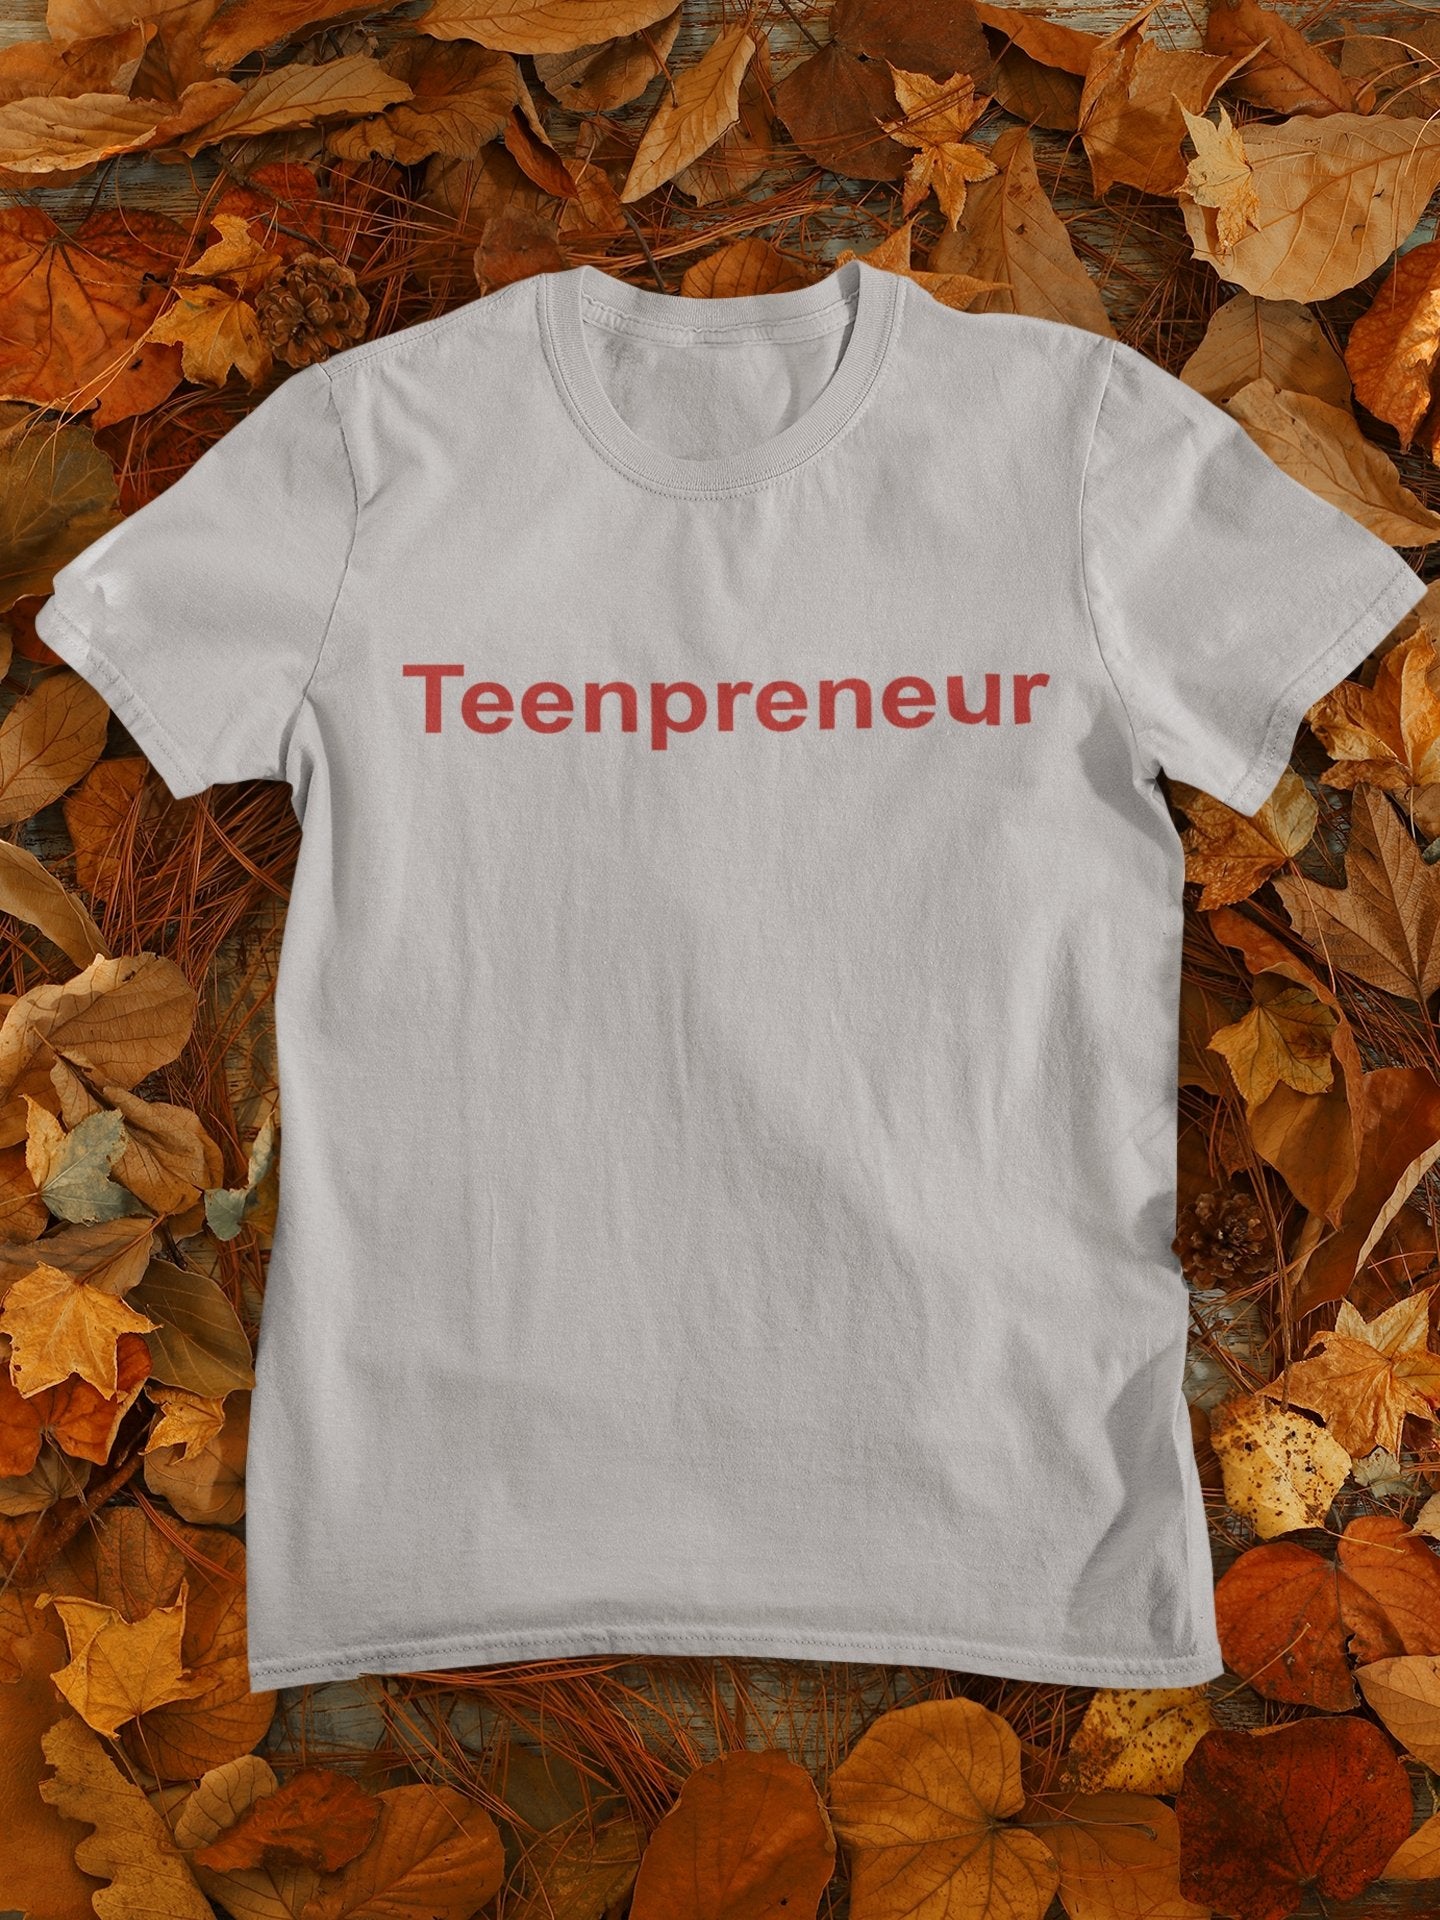 Teenpreneur Mens Half Sleeves T-shirt- FunkyTradition - Funky Tees Club